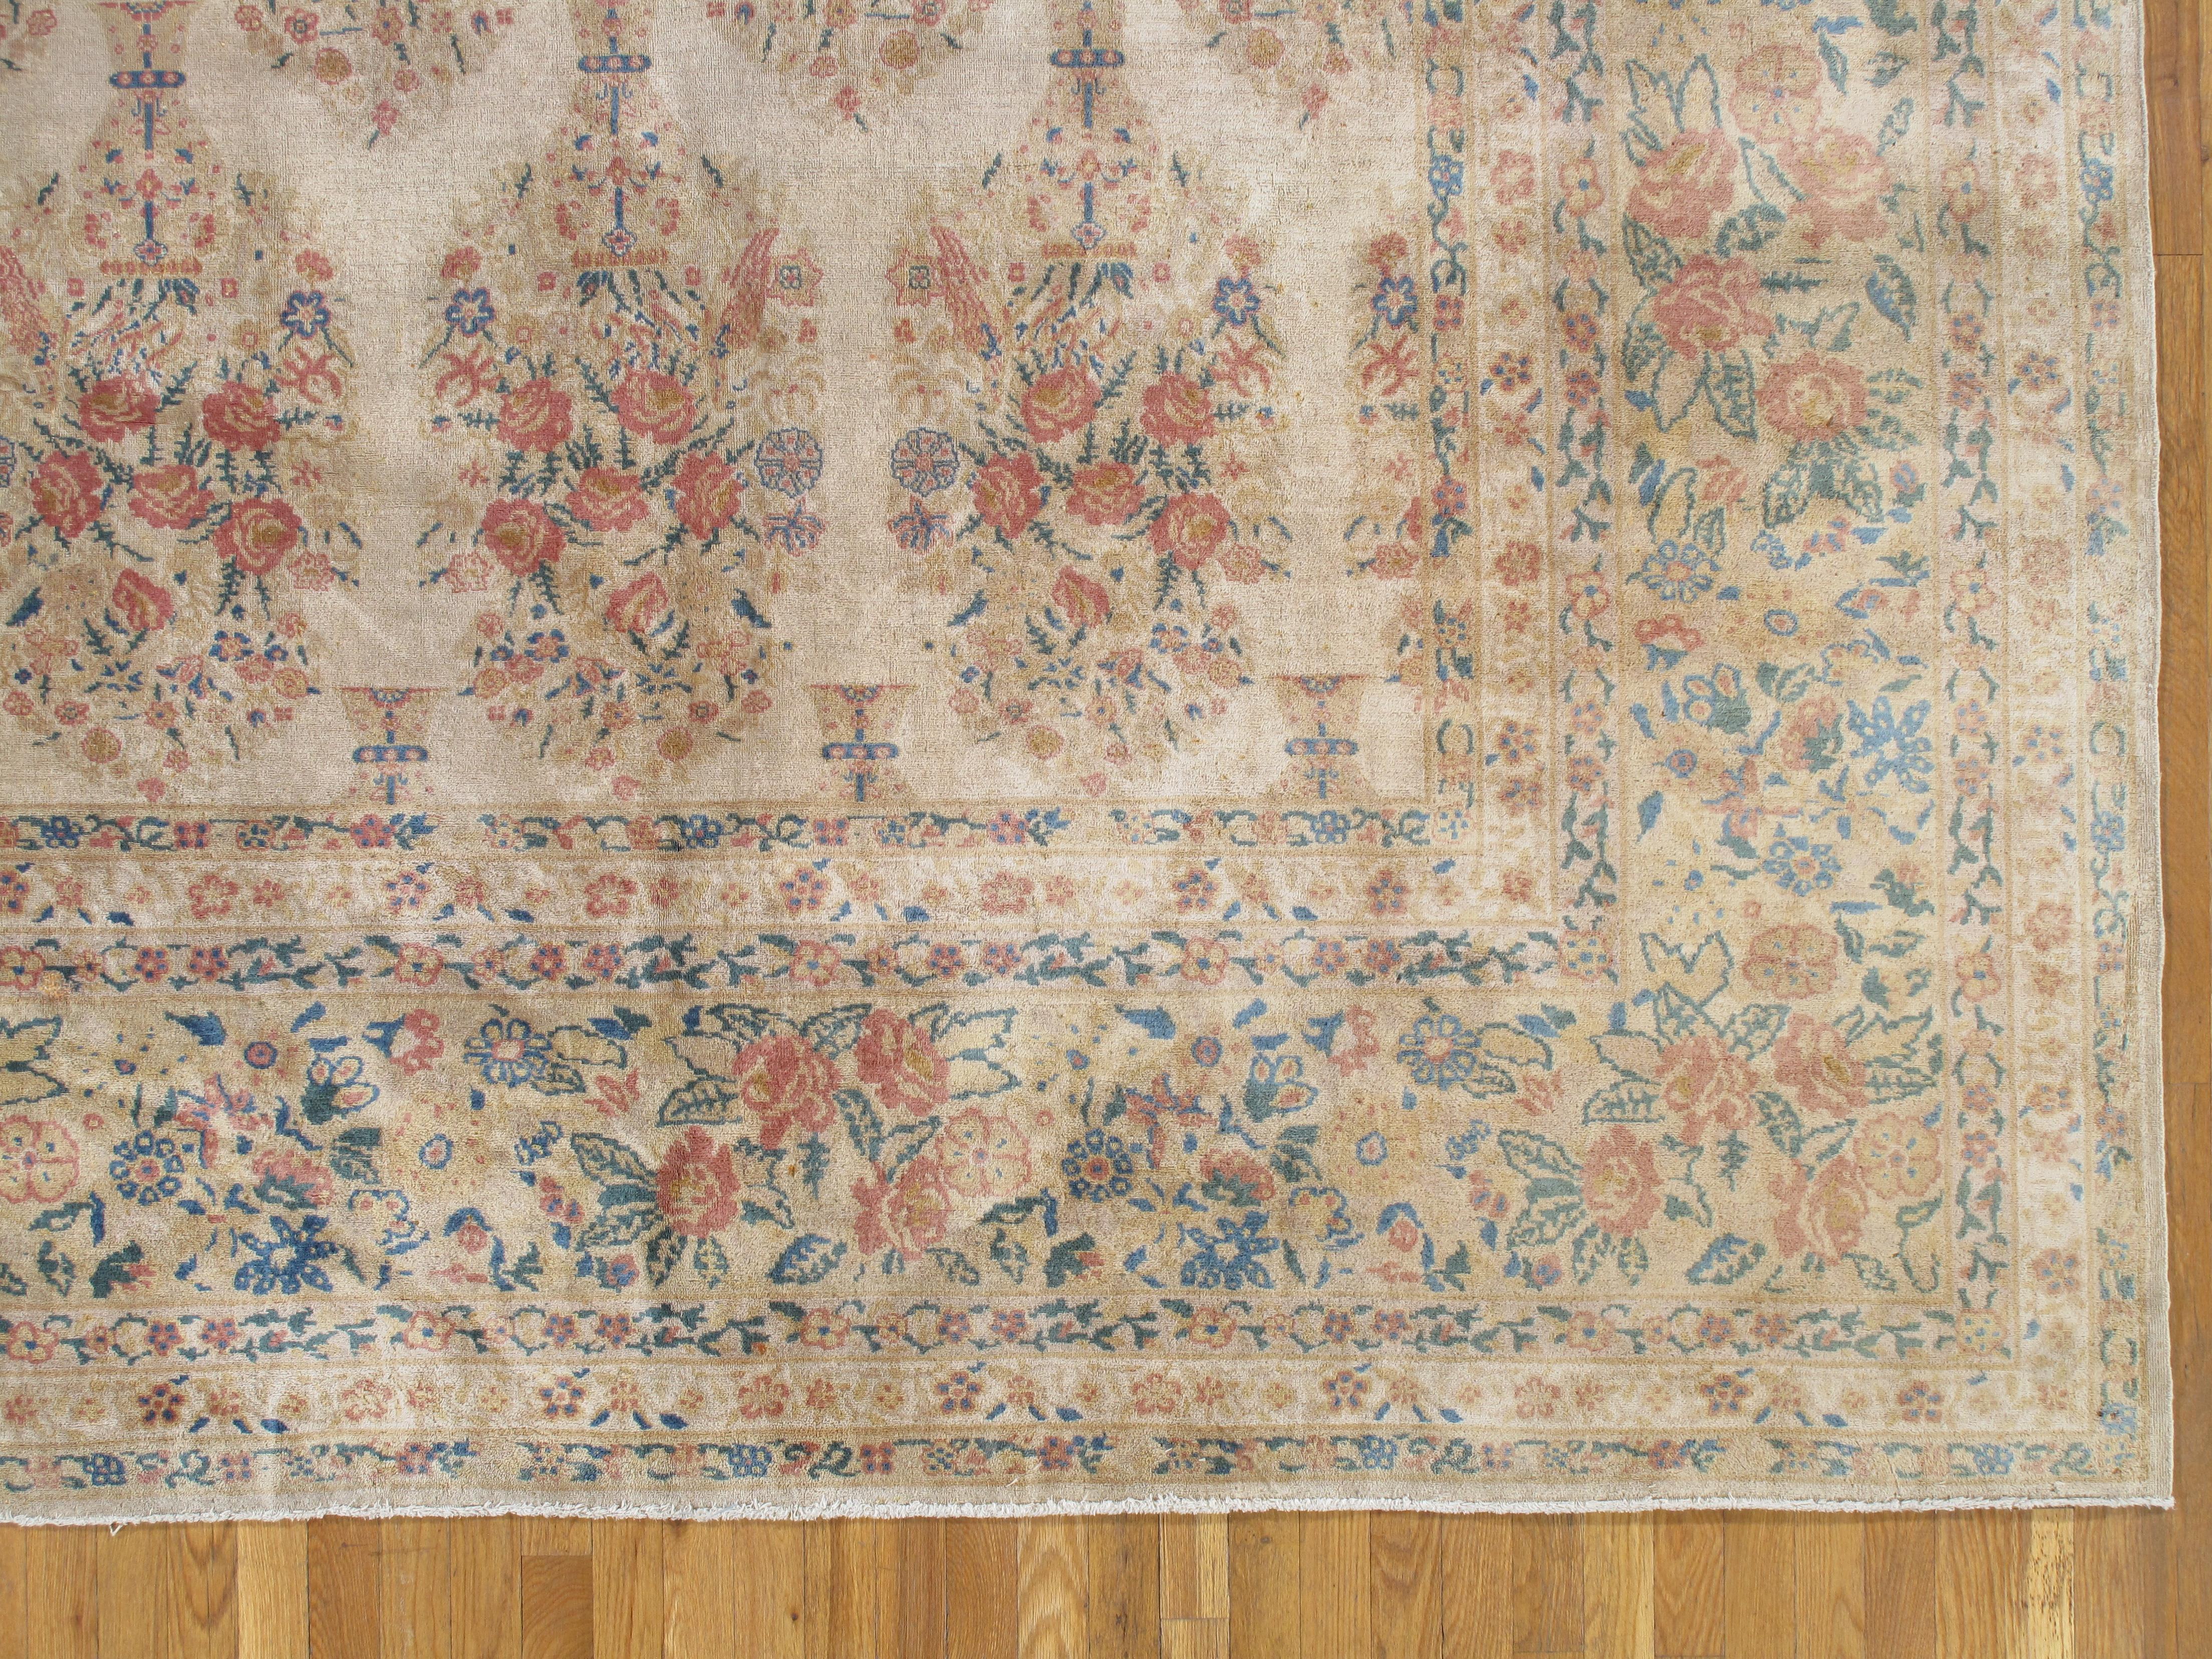 Antique Kerman carpet, 12 x 18'10